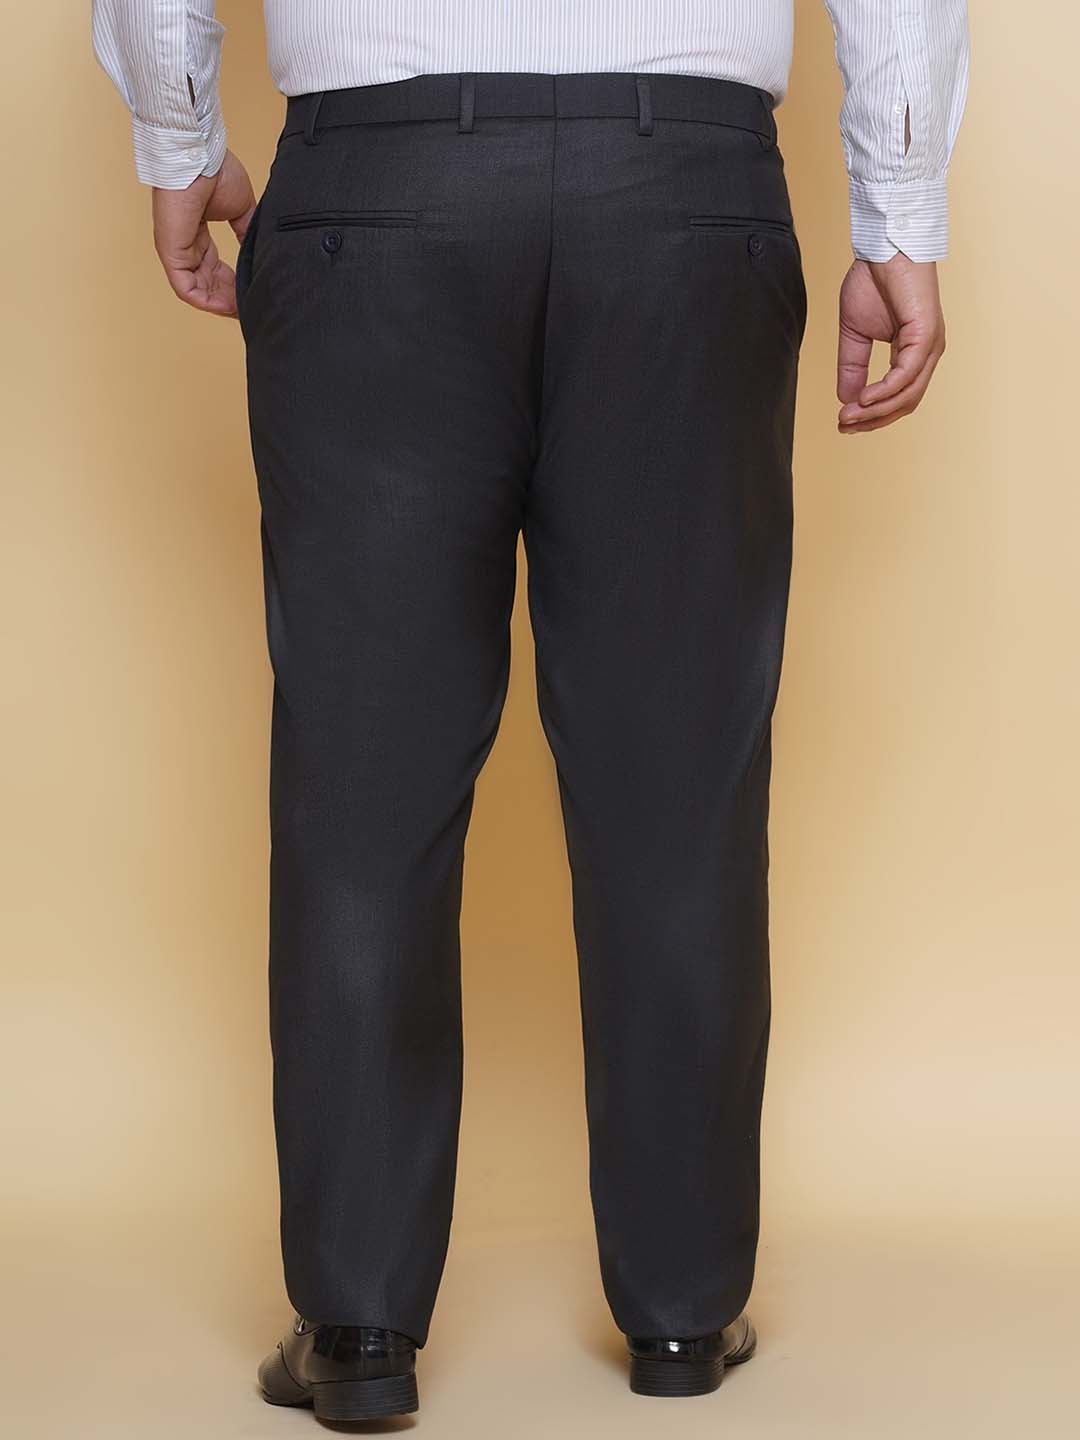 bottomwear/trousers/JPTR22010M/jptr22010m-5.jpg